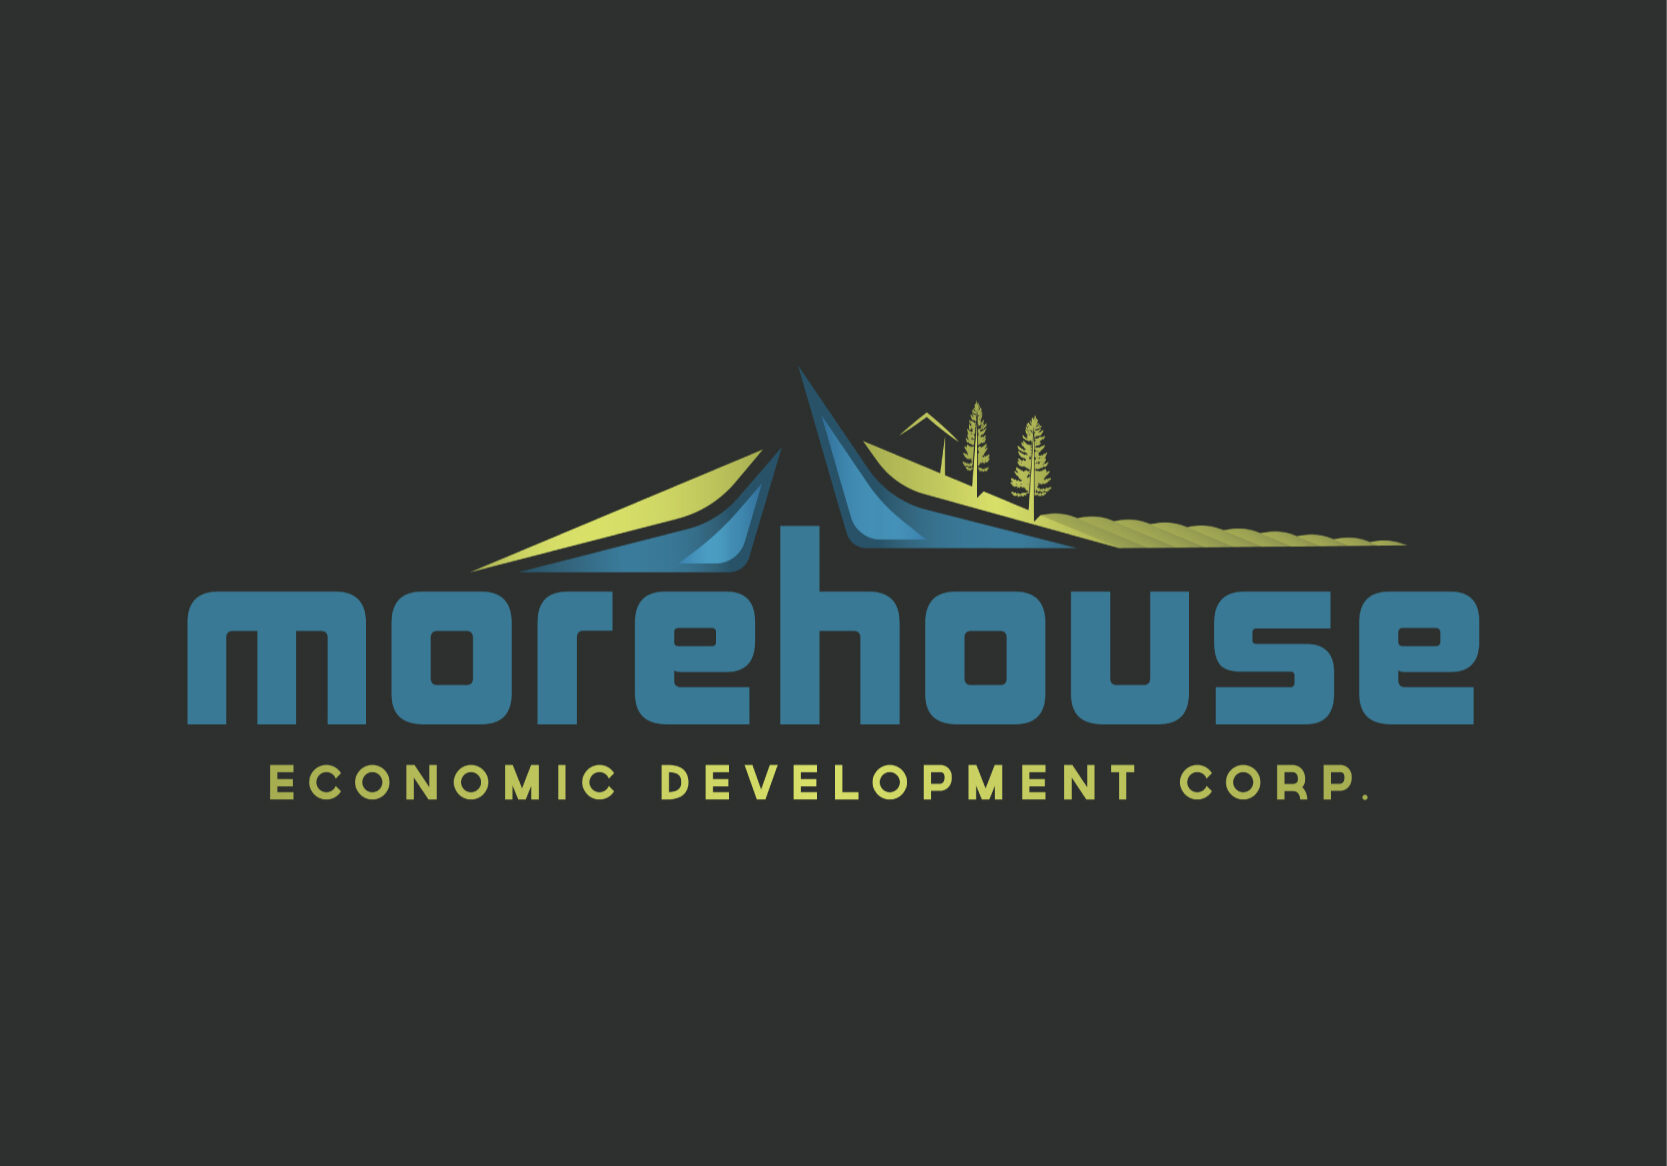 Morehouse Economic Development | SnapMe Creative